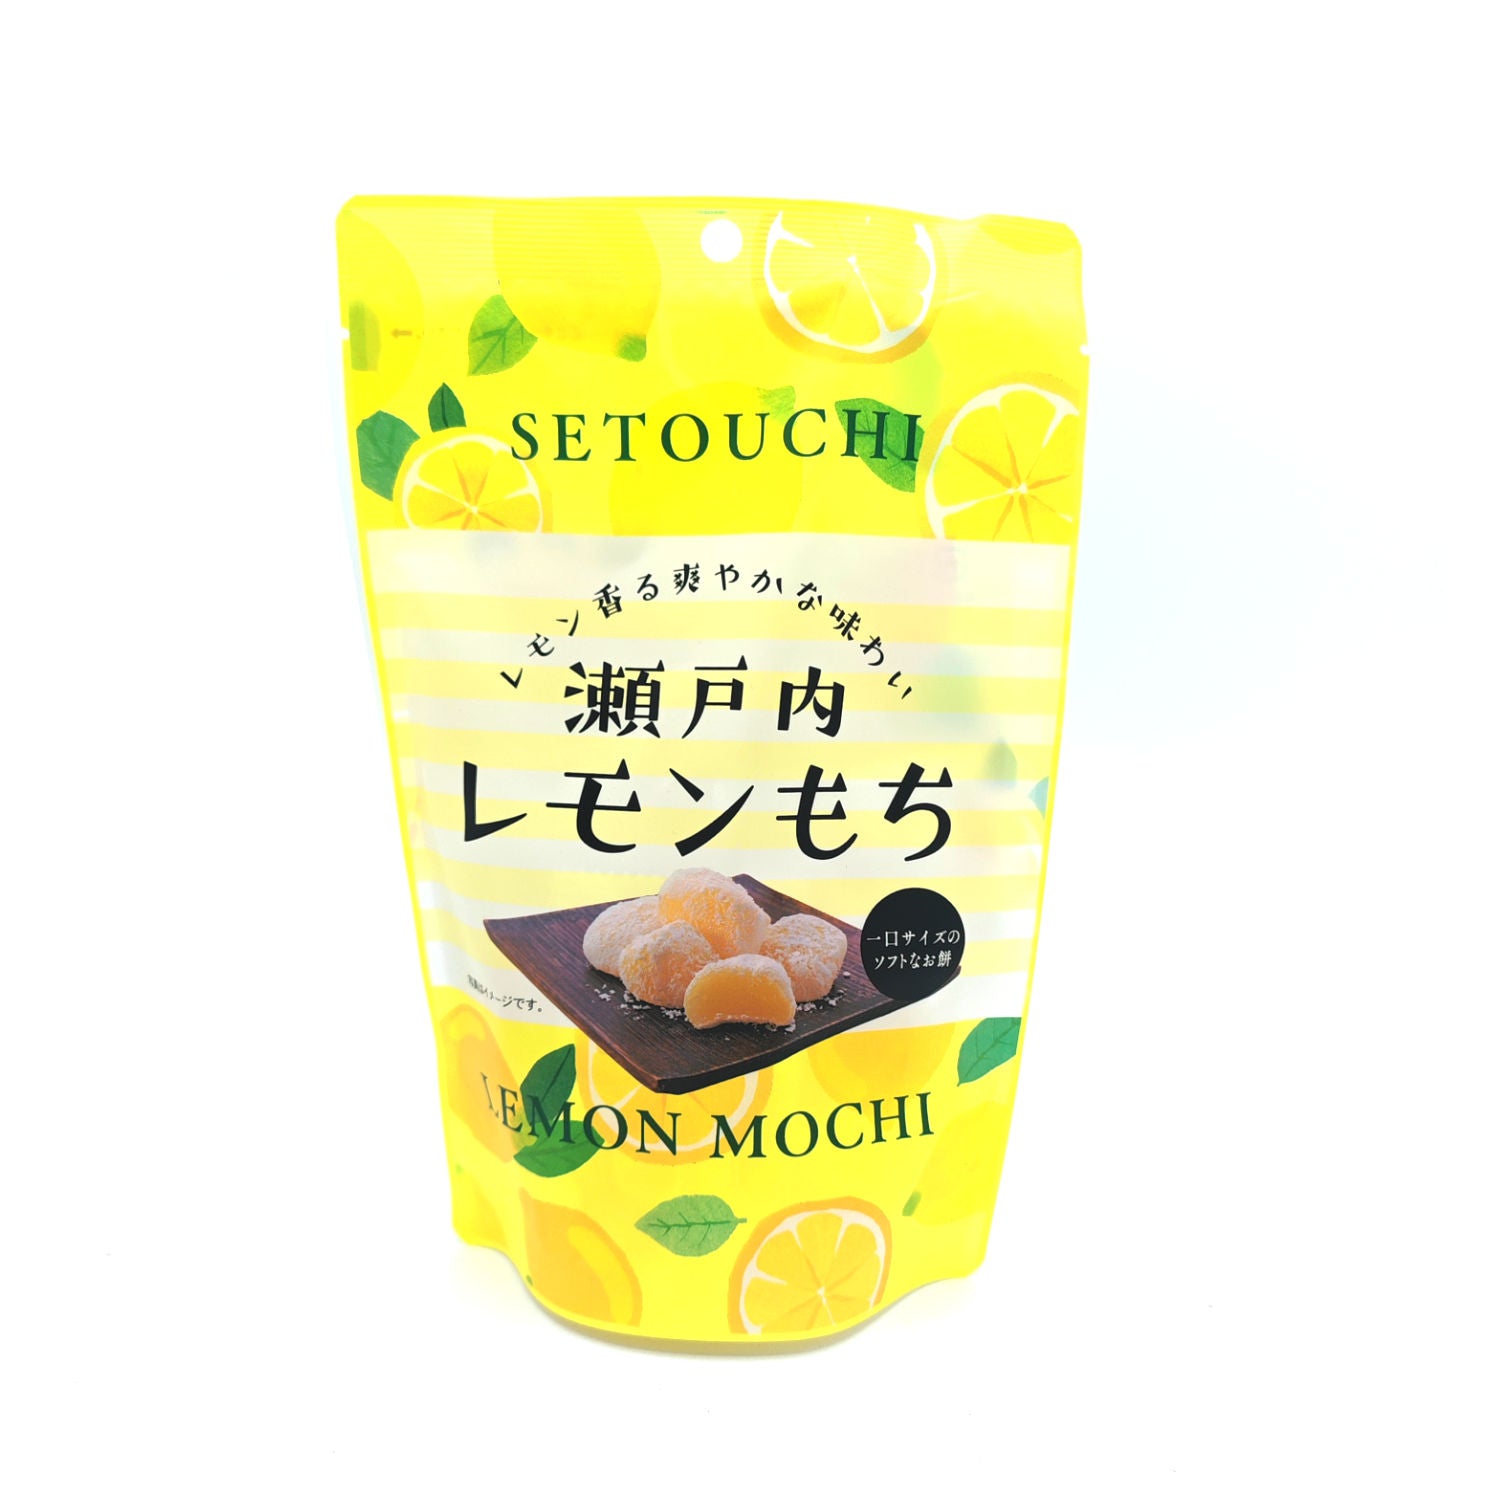 Seiki Mochi Lemon 130g